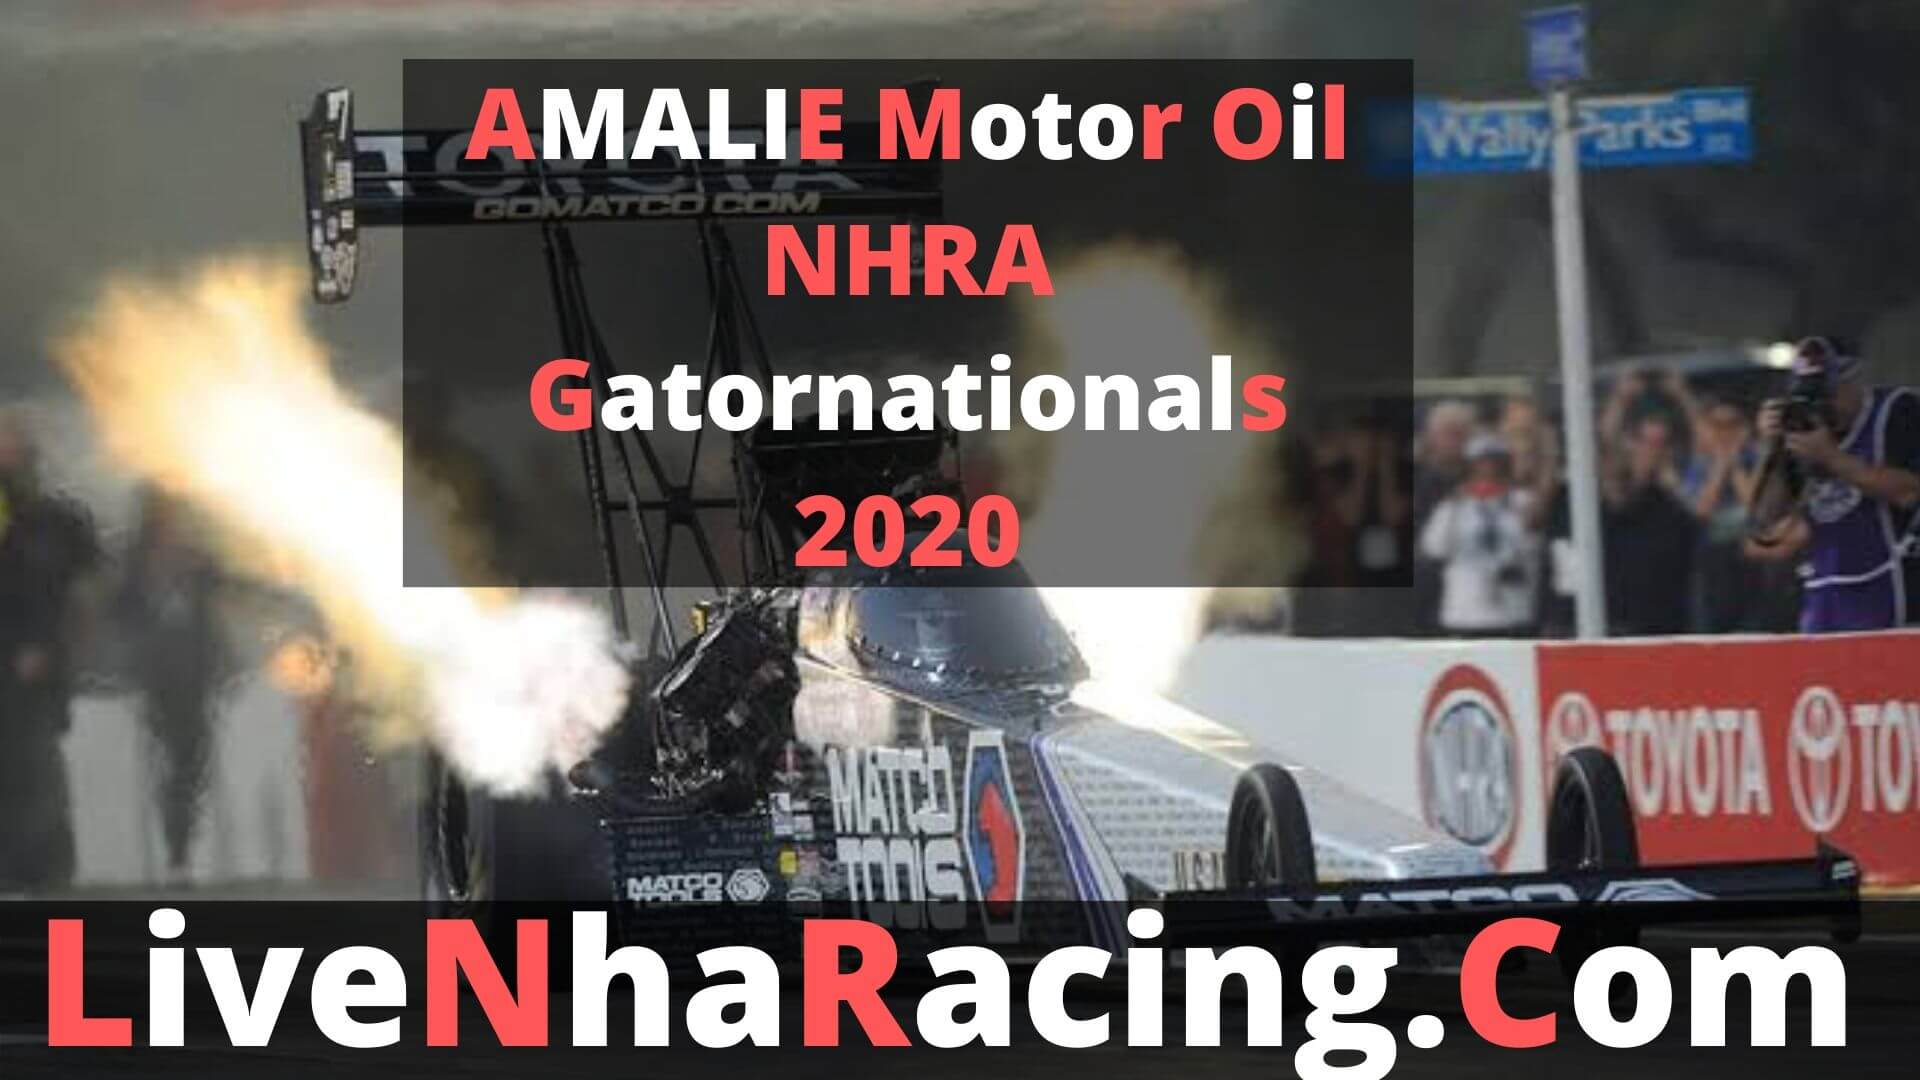 2018 Amalie Motor Oil NHRA Gatornationals Live